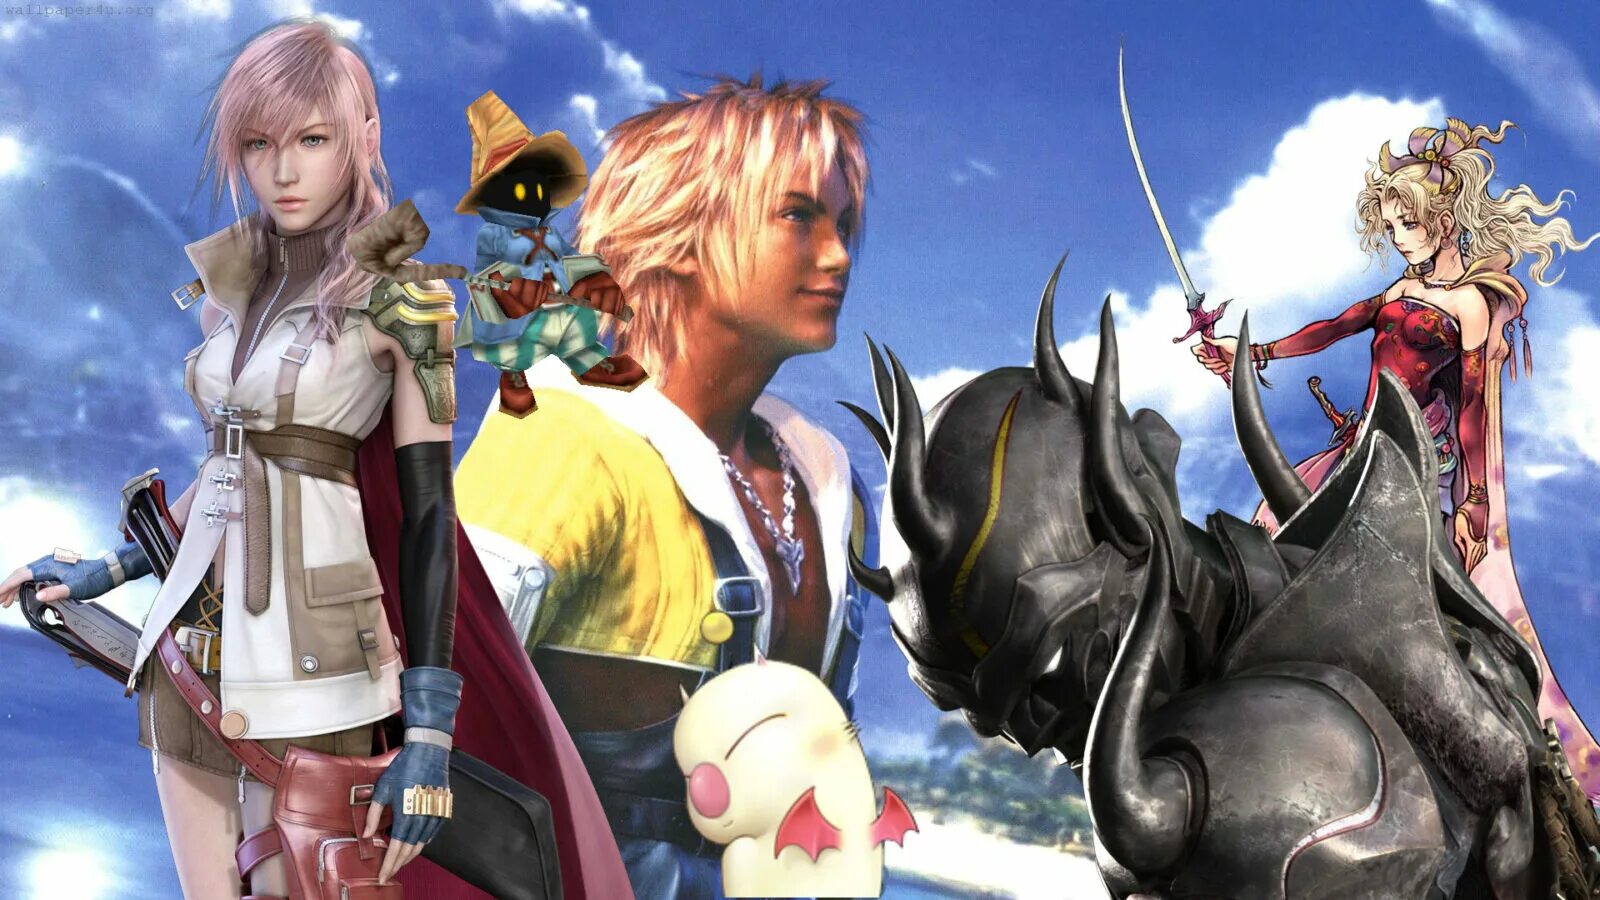 Файнал фэнтези 1. Final Fantasy 3. Финал фэнтези 1ё. Final Fantasy обложка.